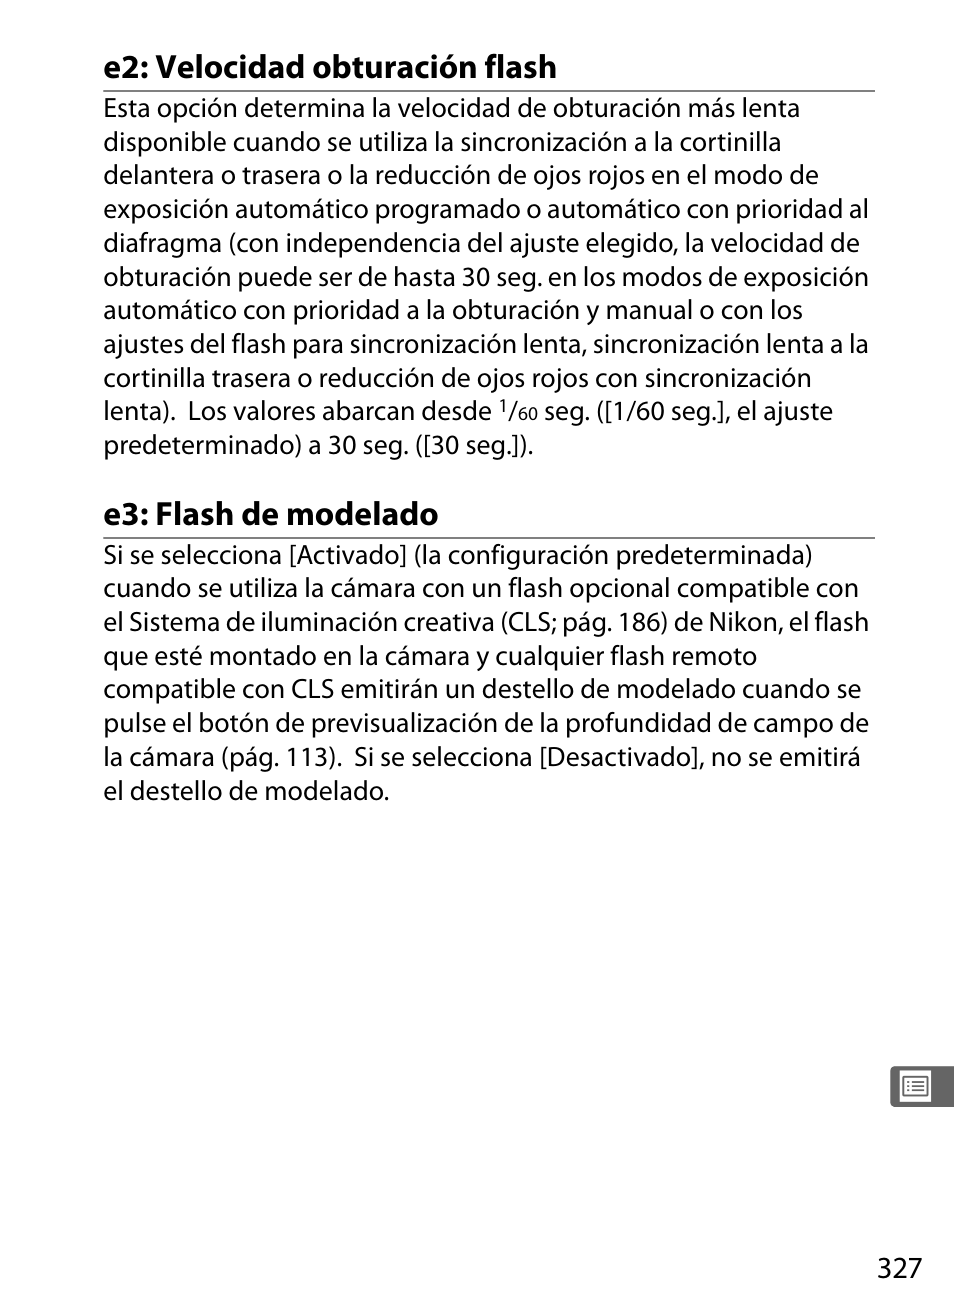 E2: velocidad obturación flash, E3: flash de modelado | Nikon D3X Manual del usuario | Página 353 / 476